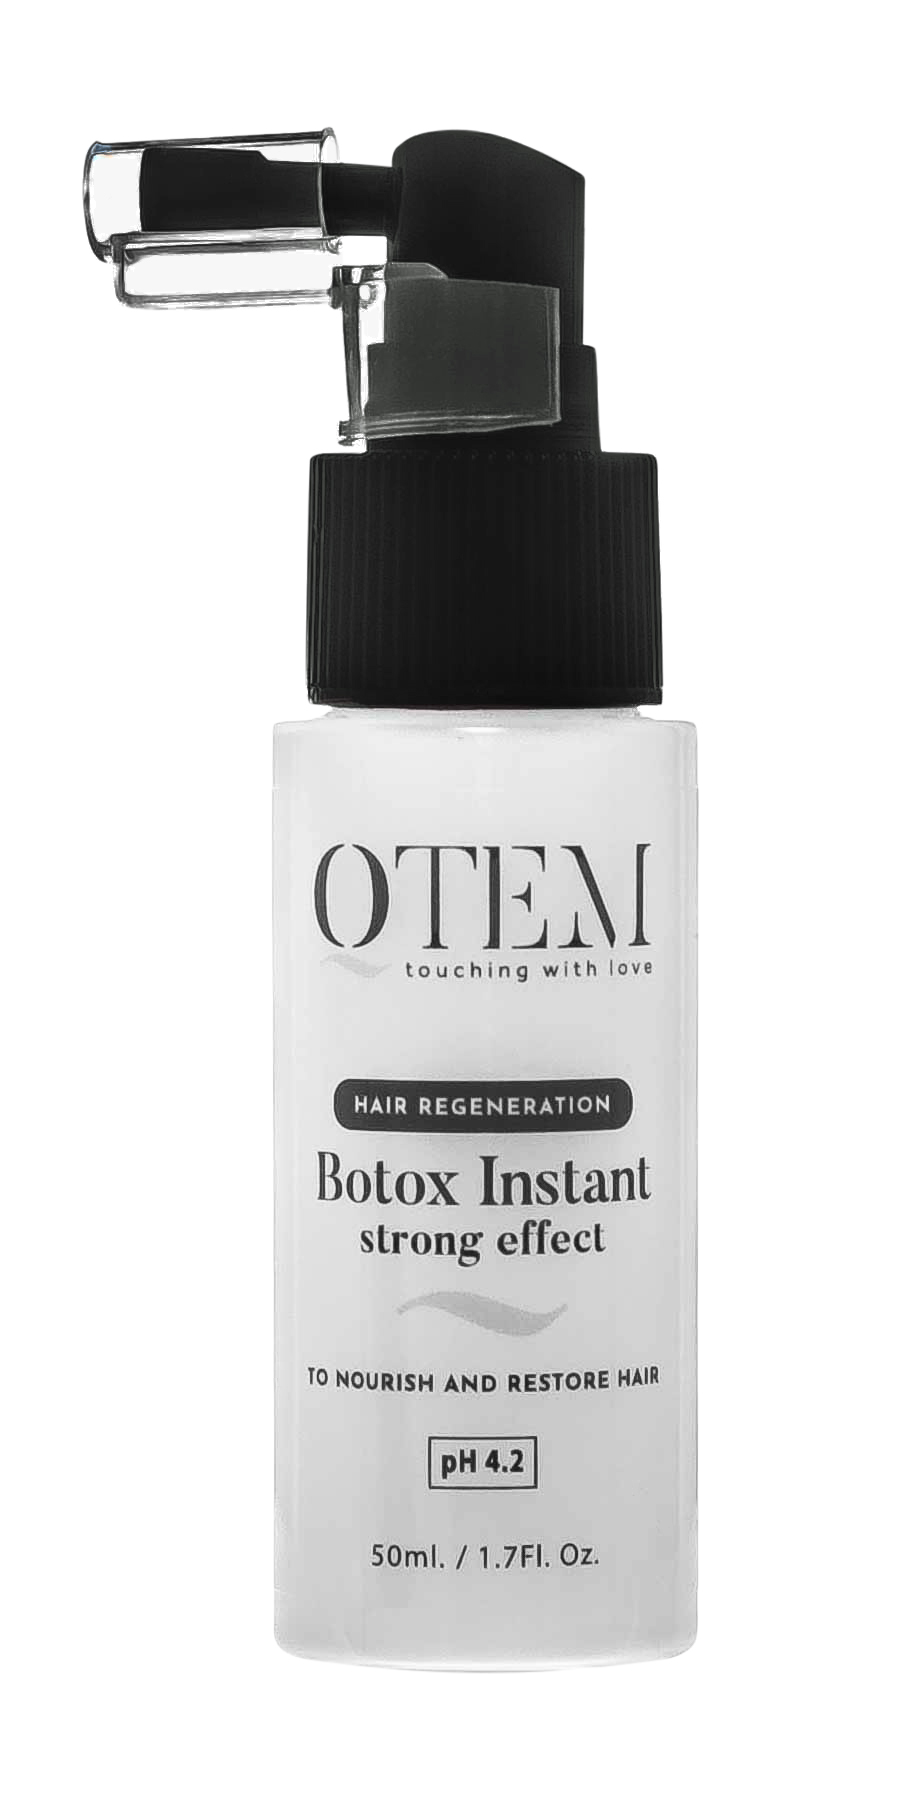 Qtem Восстанавливающий холодный спрей-филлер для волос Instant Strong Effect, 50 мл (Qtem, Hair Regeneration) восстанавливающий спрей qtem hair regeneration botox instant strong effect 150 мл